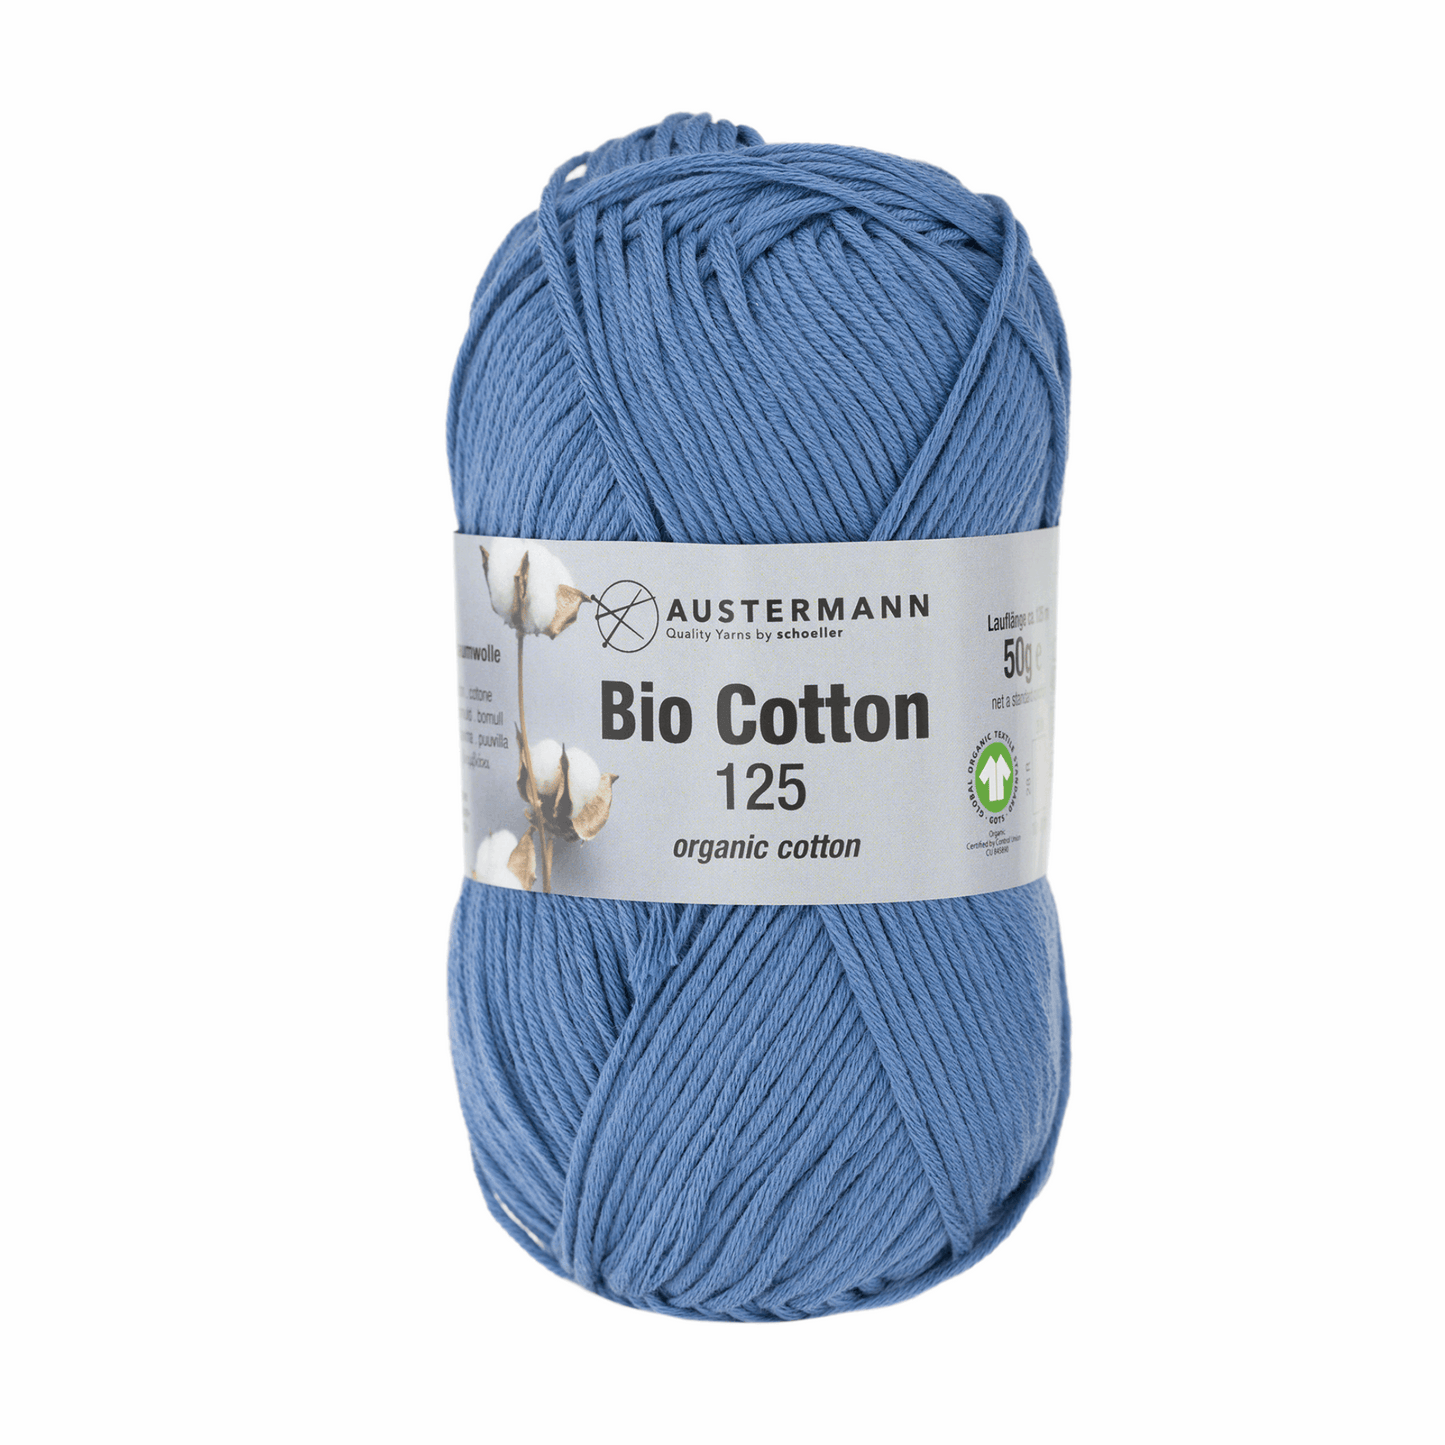 Gots  bio Cotton 125 50g, 90345, Farbe 13, blau